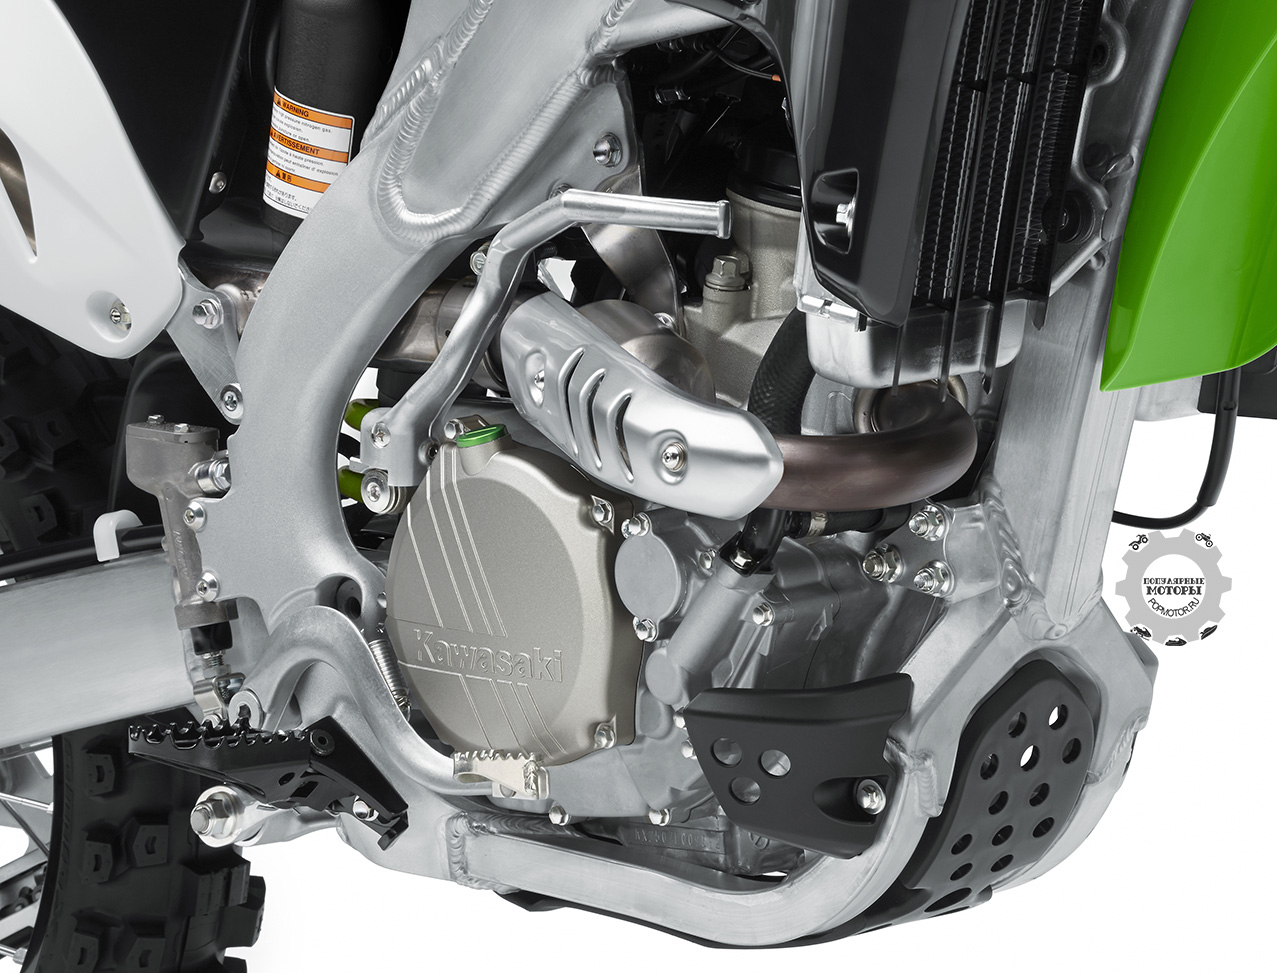 Четырёхтактный двигатель Kawasaki KX250F 2015 сохранил прежний диаметр цилиндра и ход поршня, но получил новый поршень конструкции "bridged box" а-ля Формула-1 наряду с обновлённым нижним топливным инжектором, более тяжёлым ротором раздатчика зажигания и обновлённым программированием блока управления мотором.